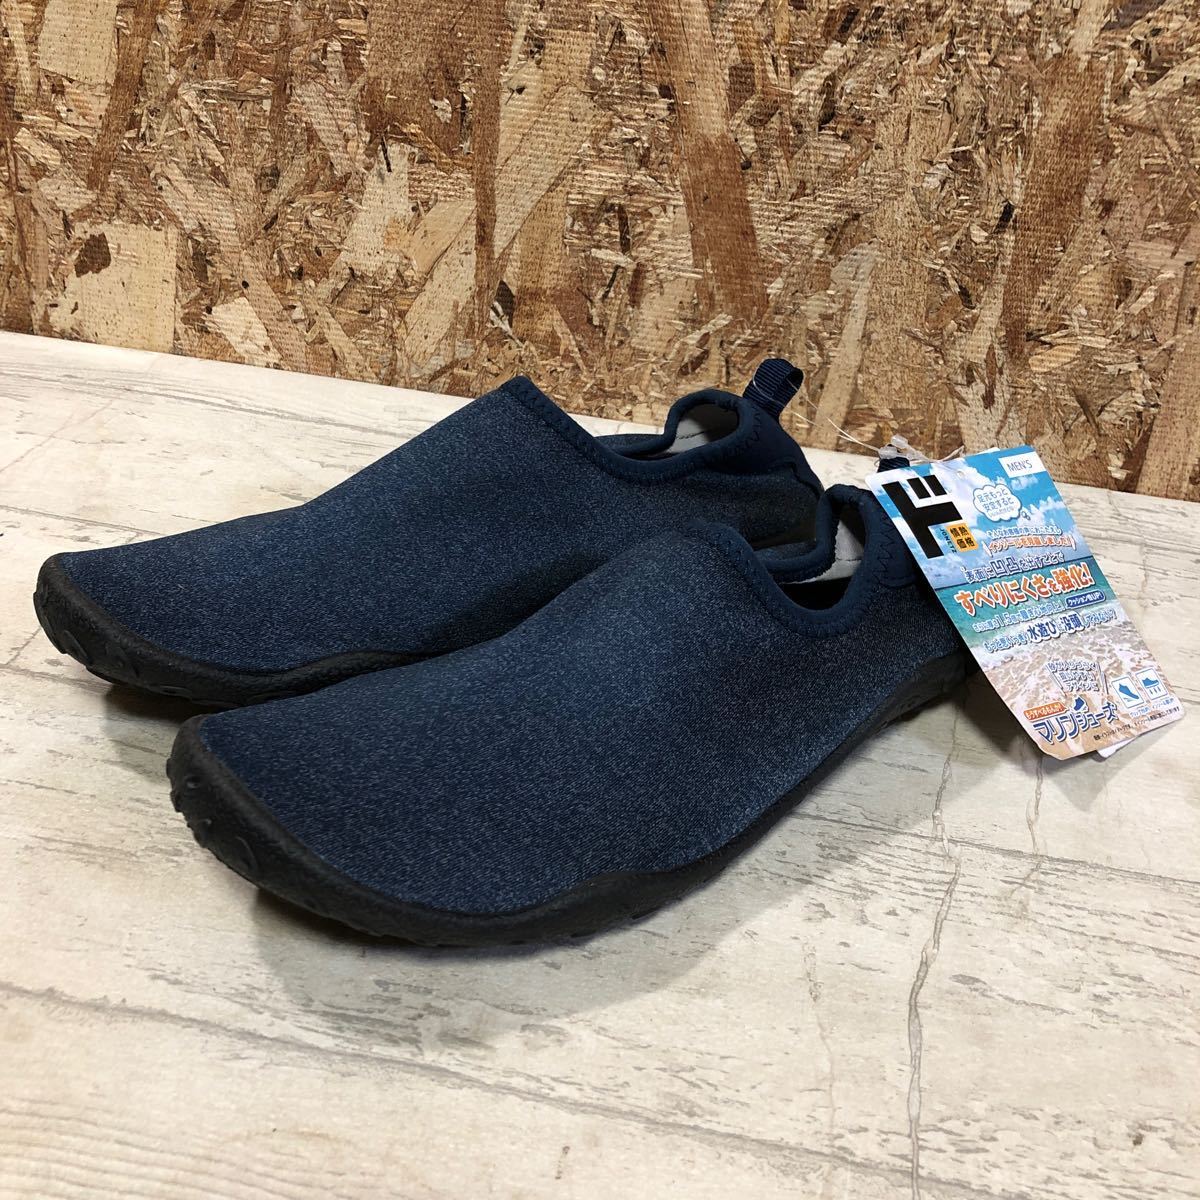  с биркой не использовался товар мужской морской обувь голубой M размер туфли без застежки водные развлечения обувь Sagawa Express соответствие .